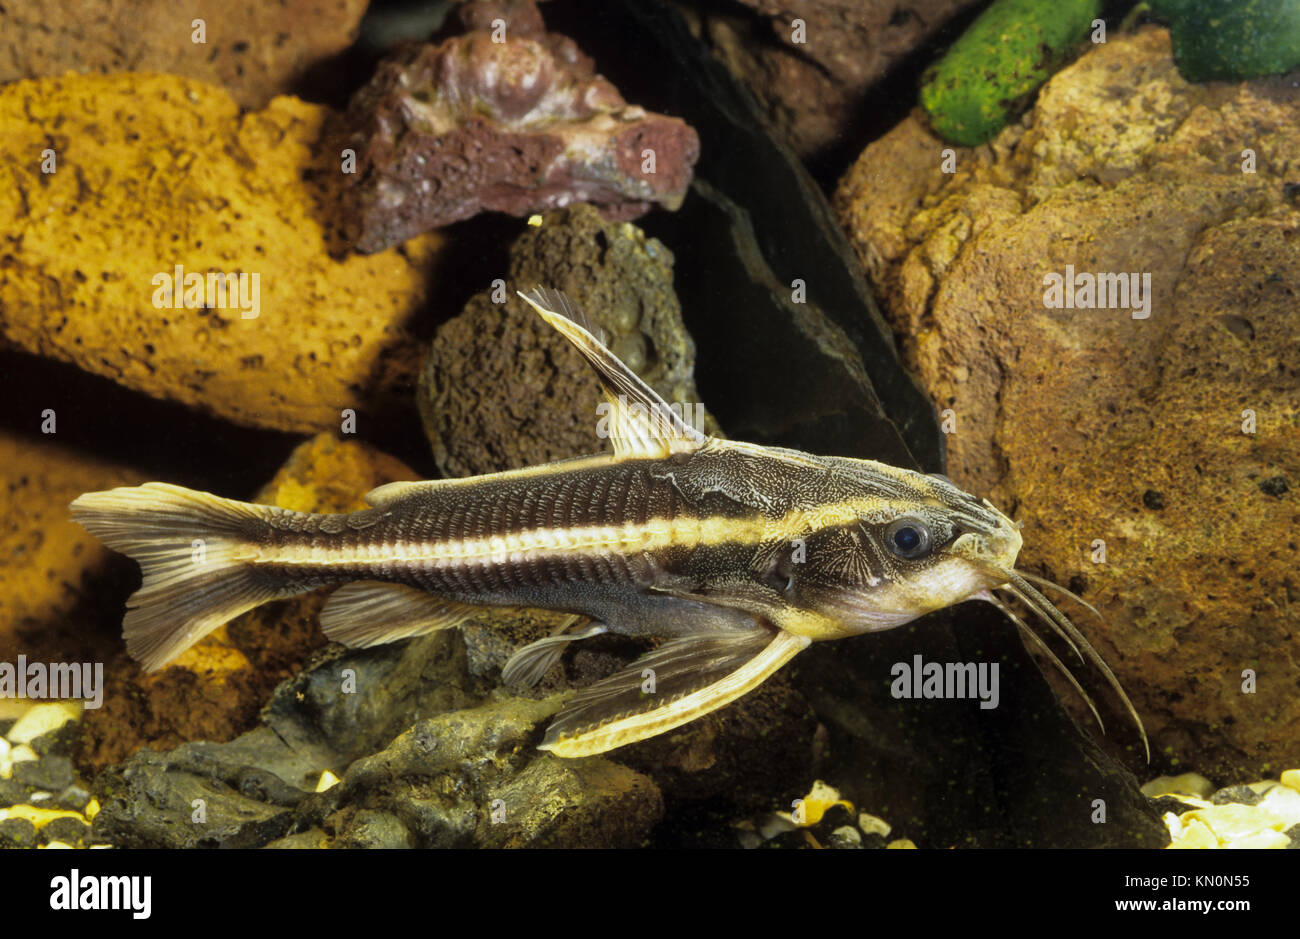 Liniendornwels, Linien-Dornwels, Platydoras costatus, Silurus costatus, Platydoras helicophilus, striped raphael catfish Stock Photo